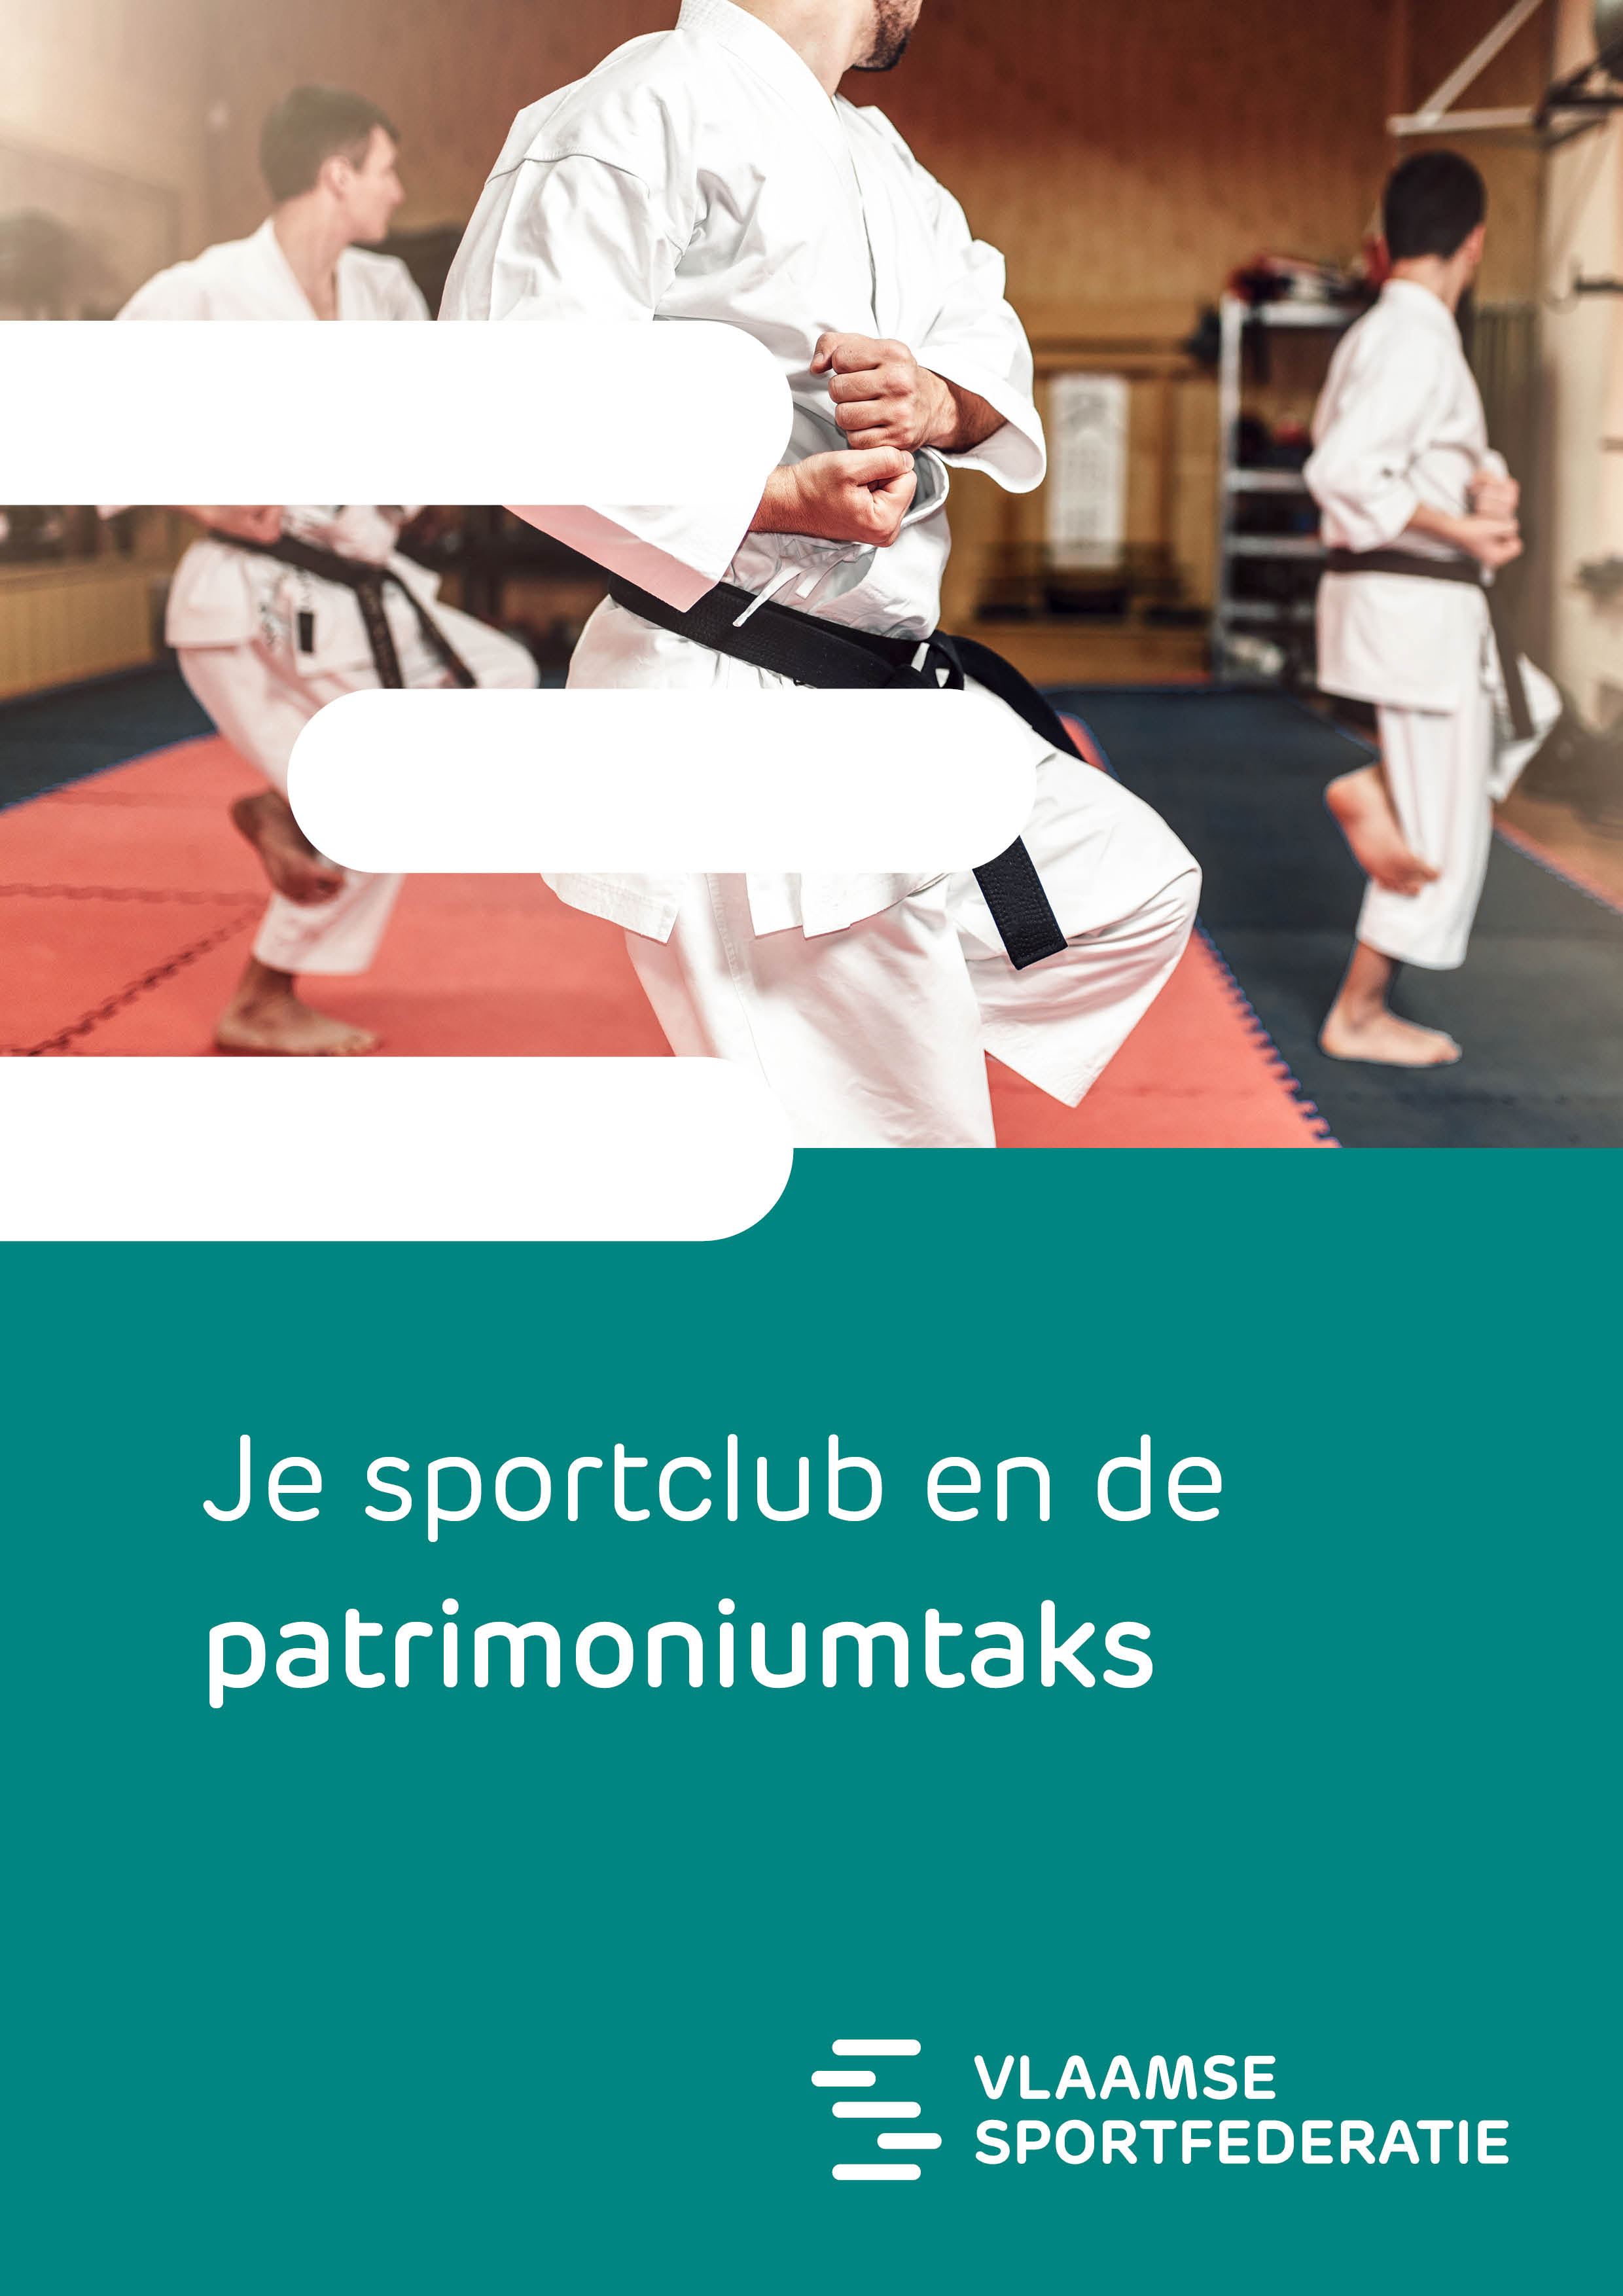 patrimoniumtaks voor sportclubs en sportfederaties